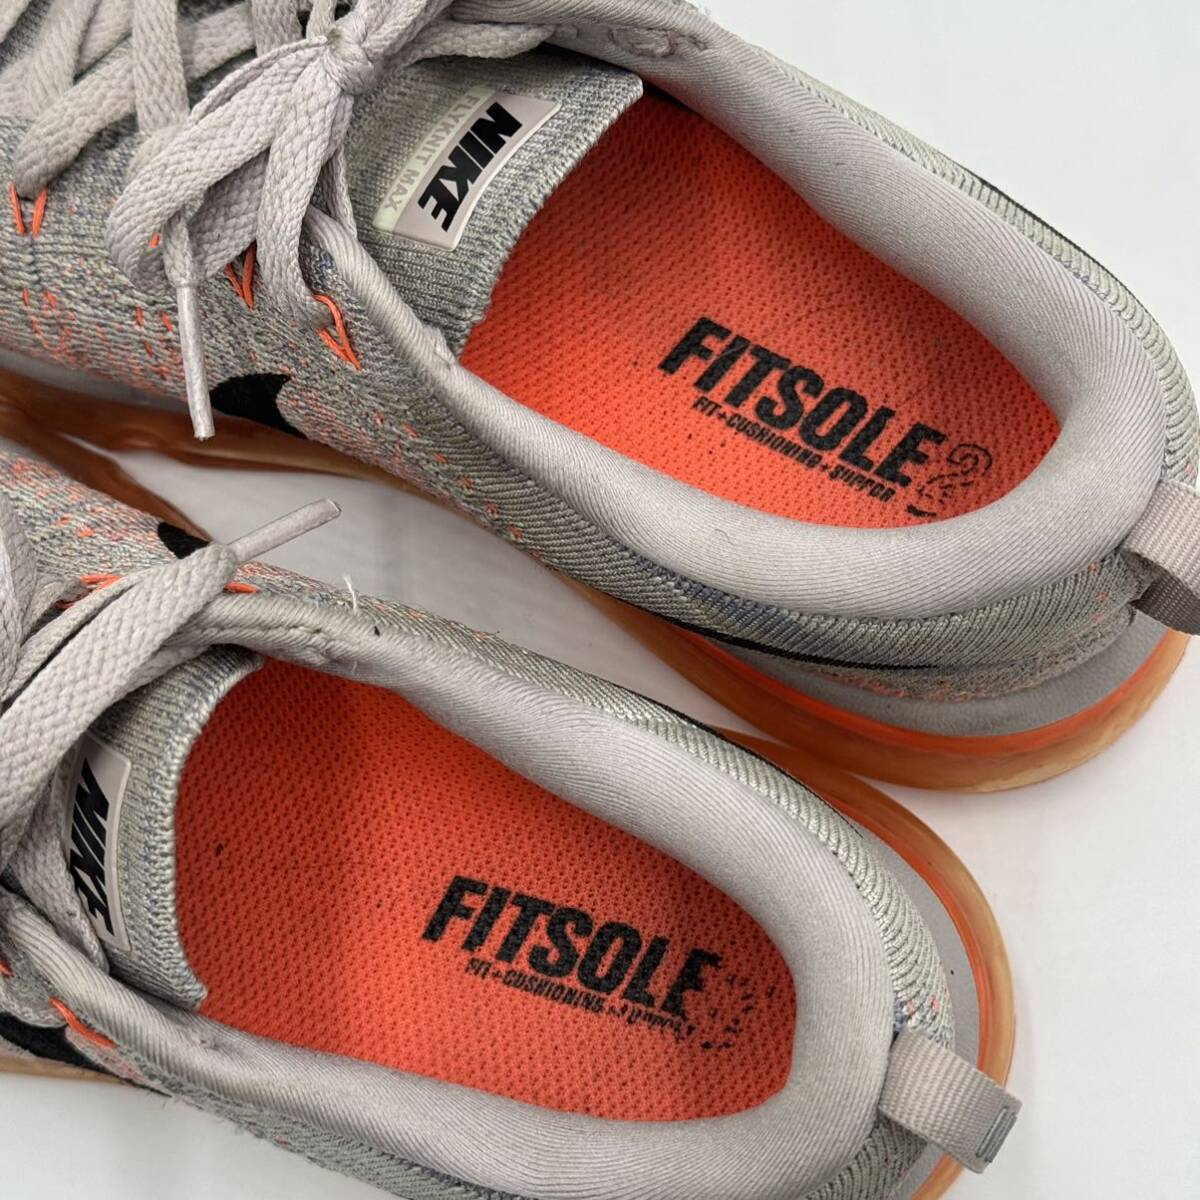 D* надеть обувь ощущение выдающийся!!\'15 год производства \' NIKE Nike WMNS FLYKNIT MAX fly вязаный Max 620659-508 спортивные туфли size:24.0cm женская обувь 